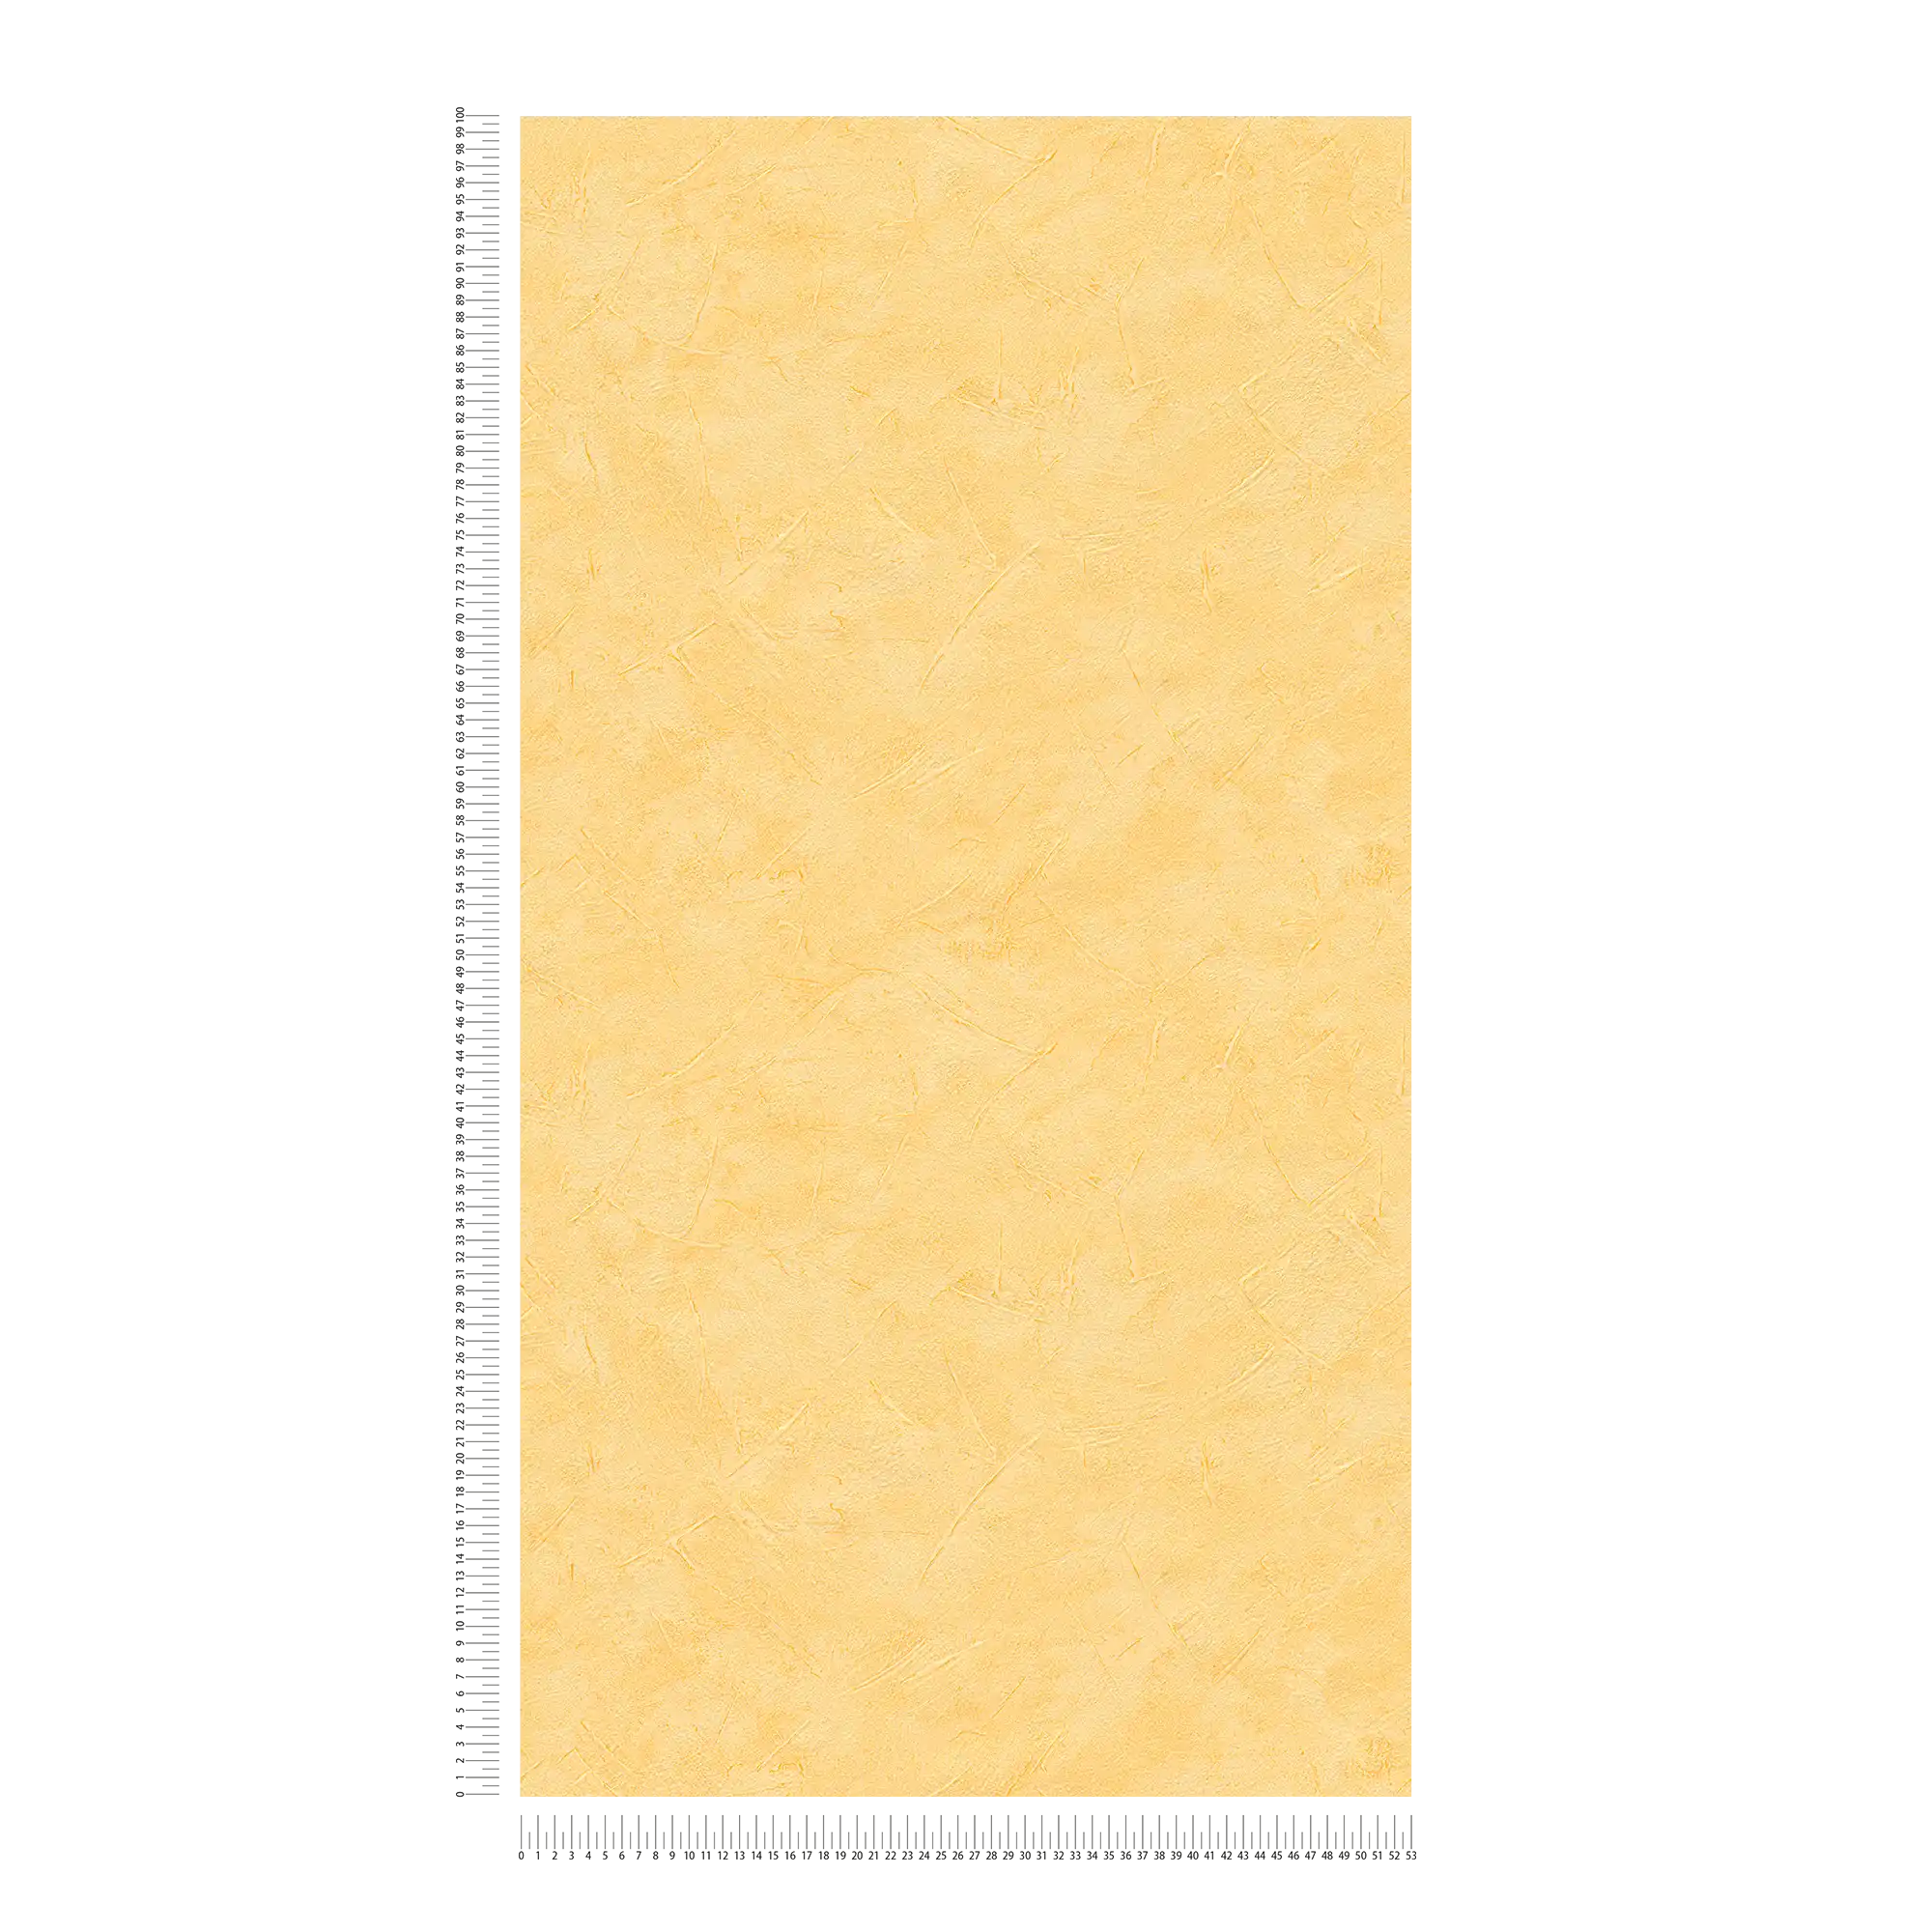             Carta da parati in gesso che strofina l'intonaco giallo uni con il motivo della struttura
        